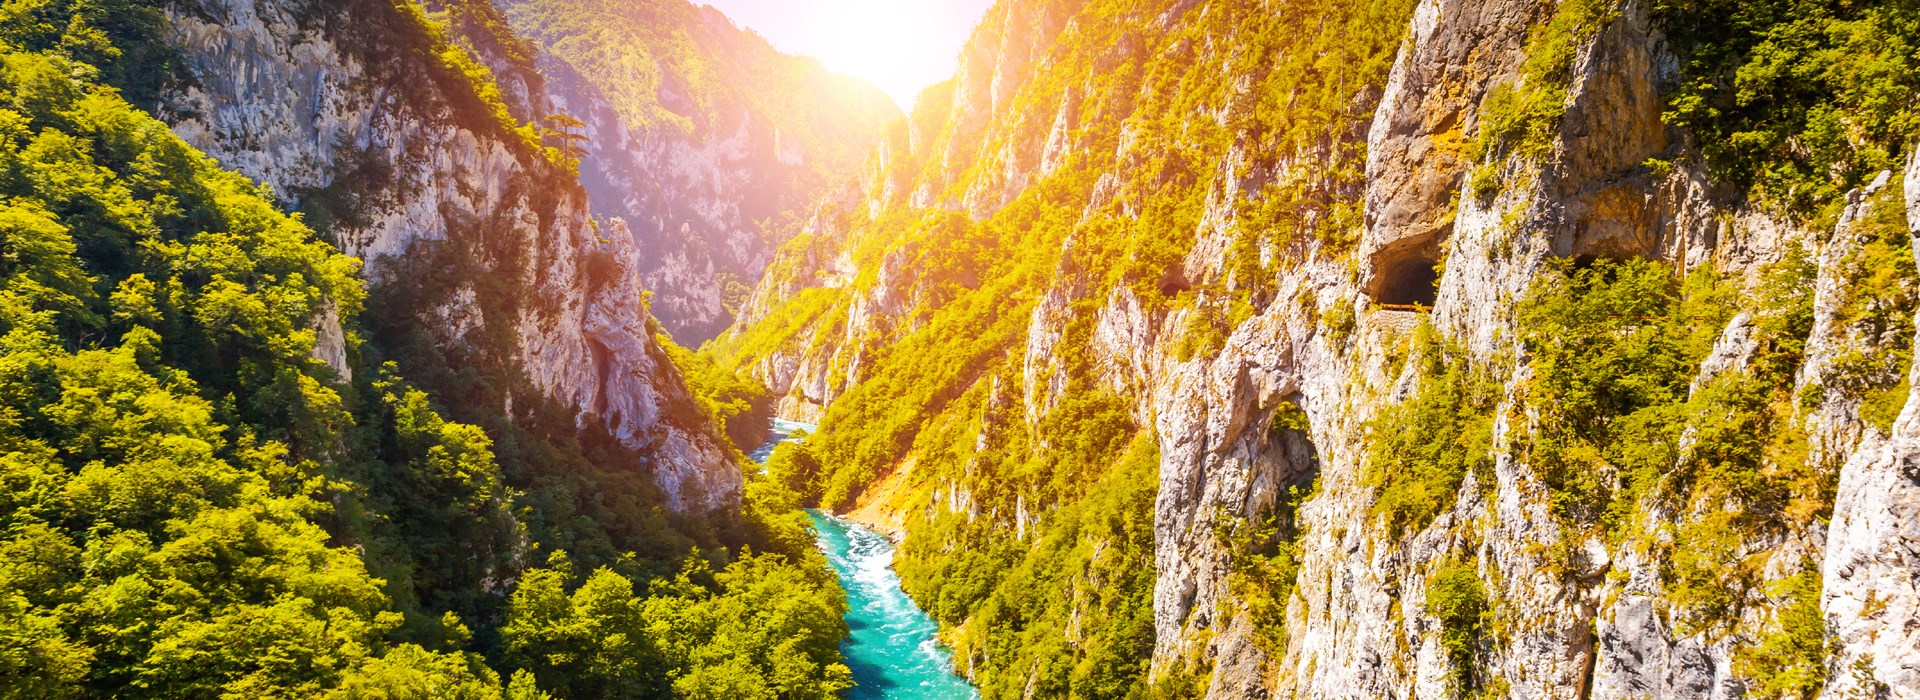 Visiter Le canyon de Piva - Montenegro-Croatie